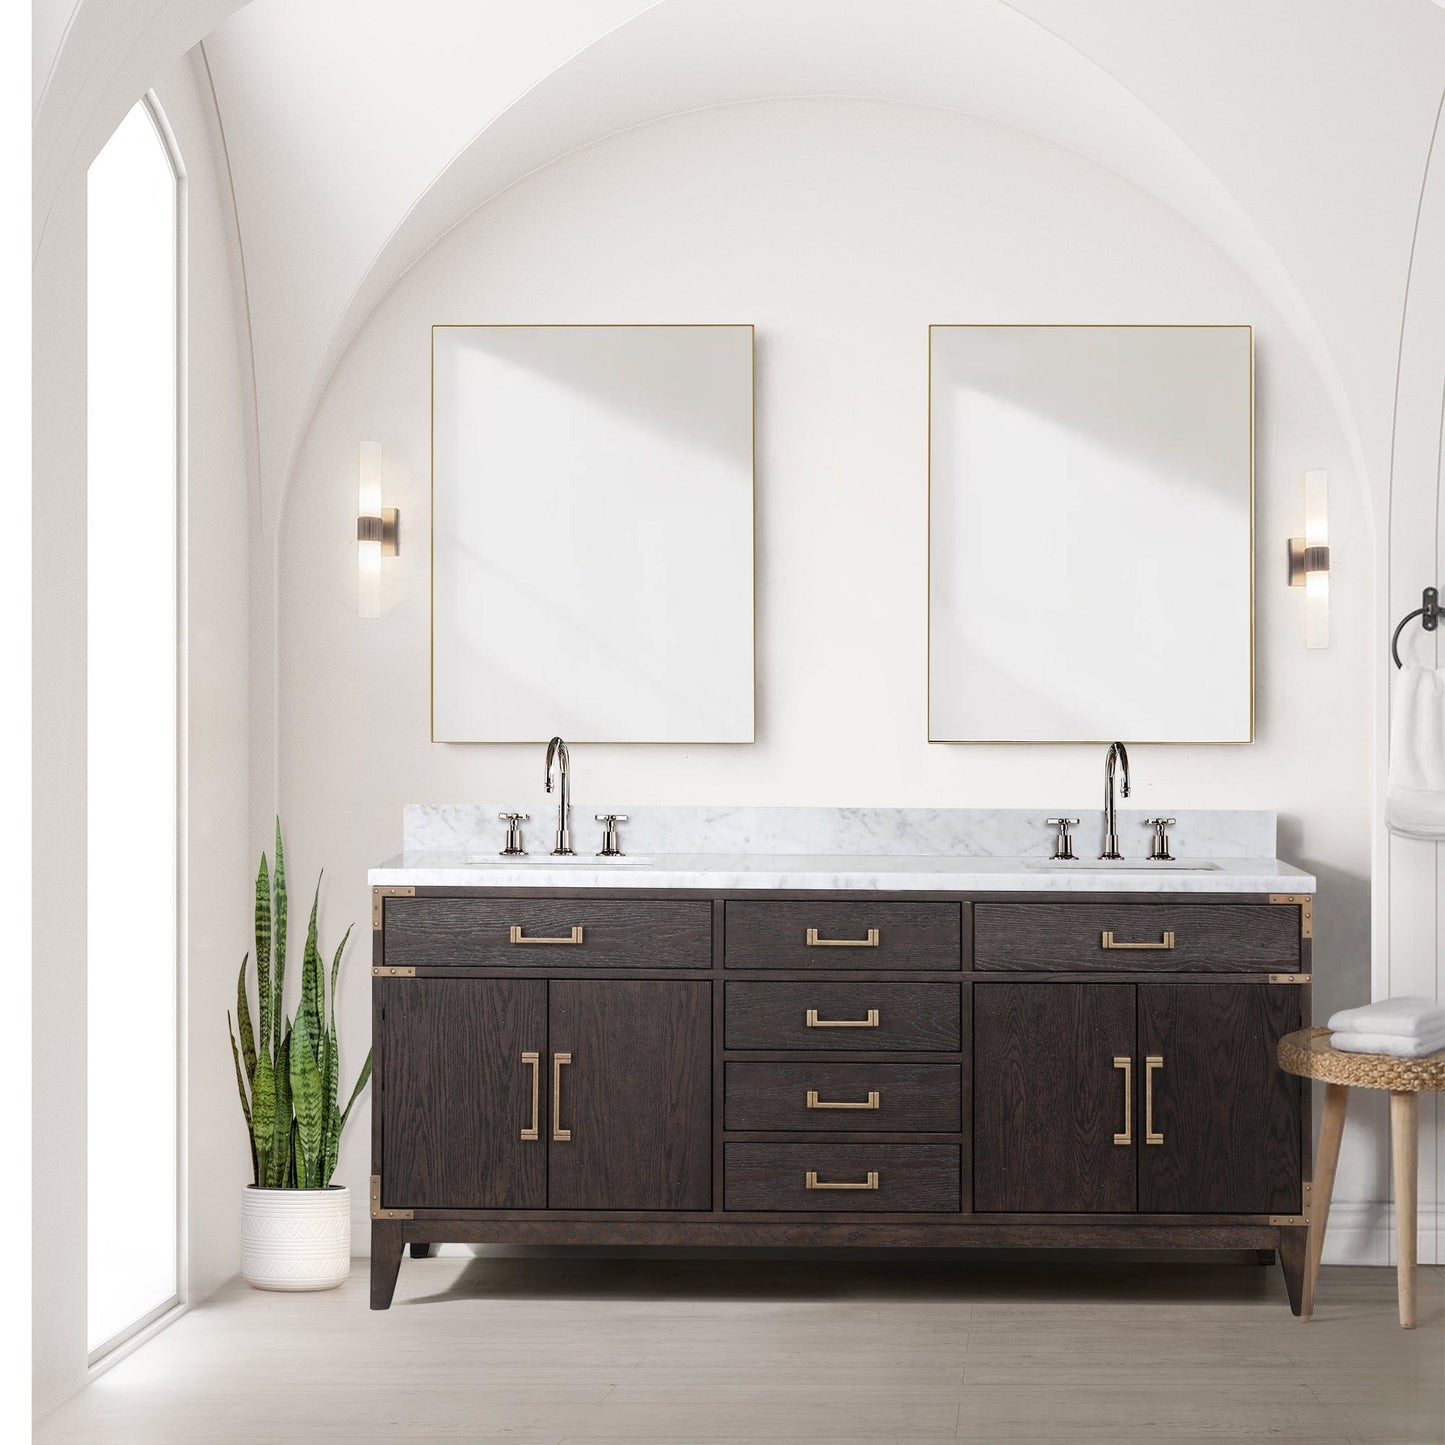 Lexora Bathroom Vanity Brown Oak / No Faucet / No Mirror Laurel 72 " x 22" Double Bath Vanity